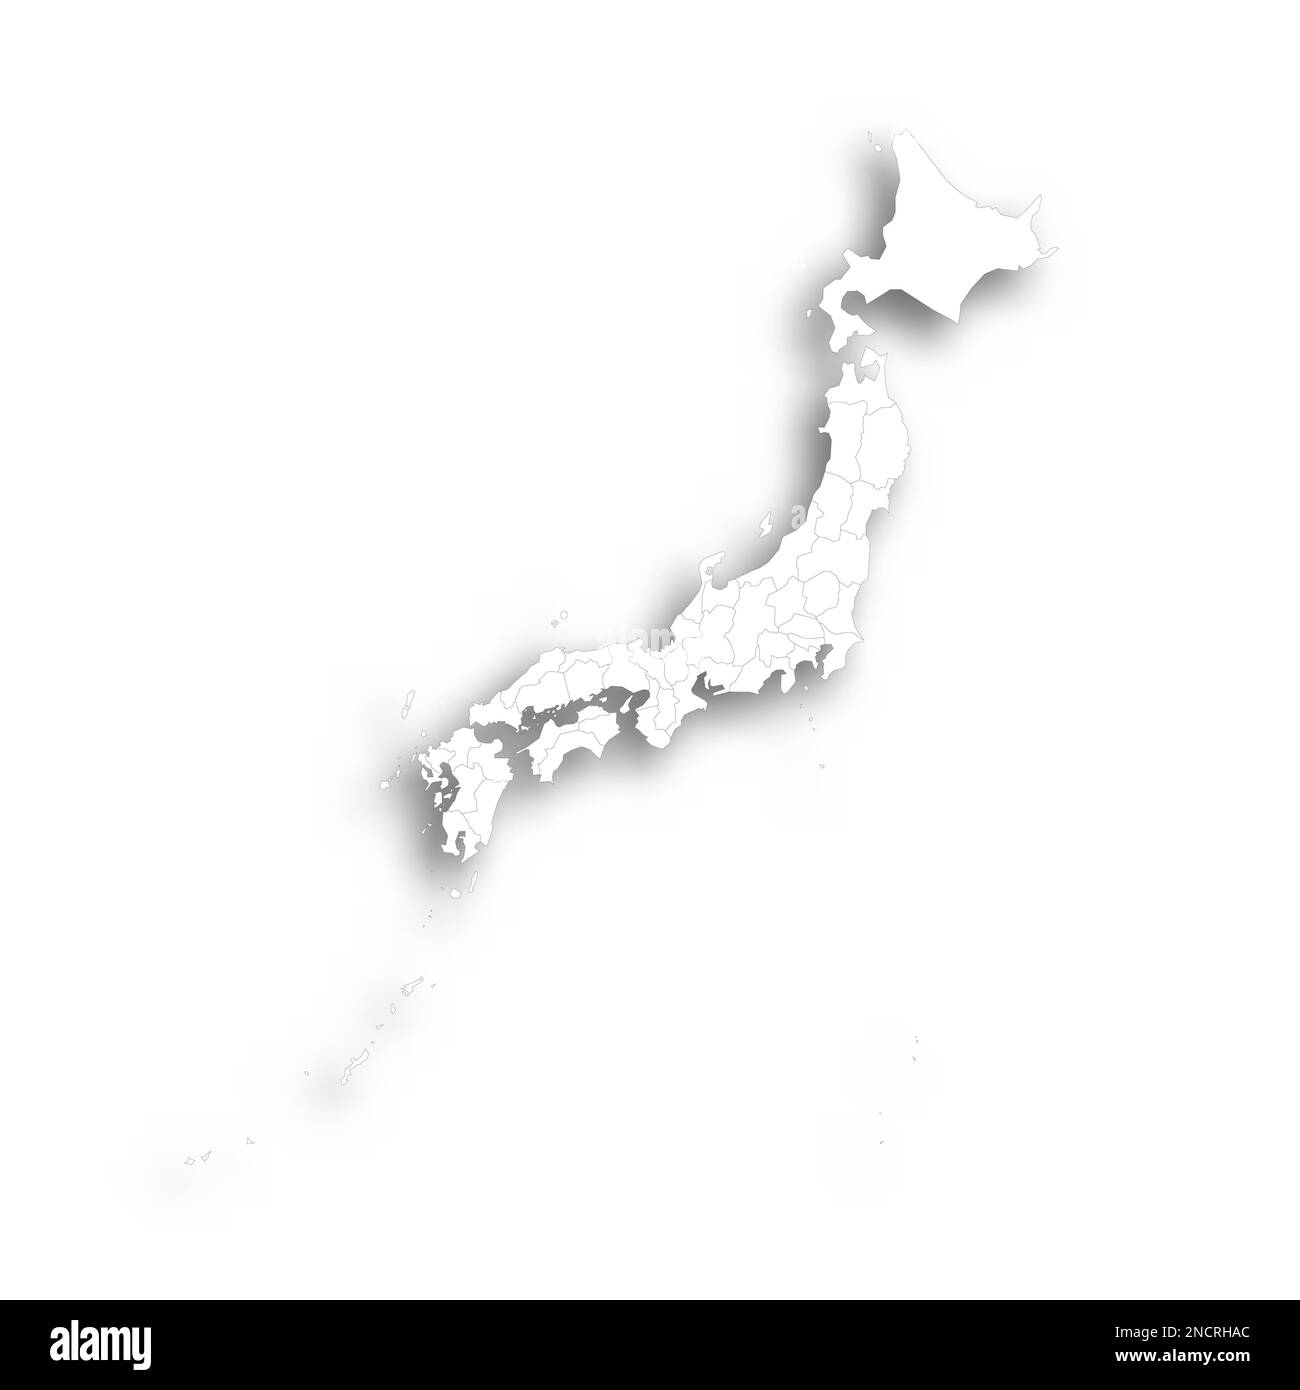 Politische Karte der Verwaltungseinheiten Japans - Präfekturen, Metropilis Tokio, Territorium Hokaido und städtische Präfekturen Kyoto und Osaka. Flache weiße, leere Karte mit dünnem schwarzen Umriss und Schlagschatten. Stock Vektor